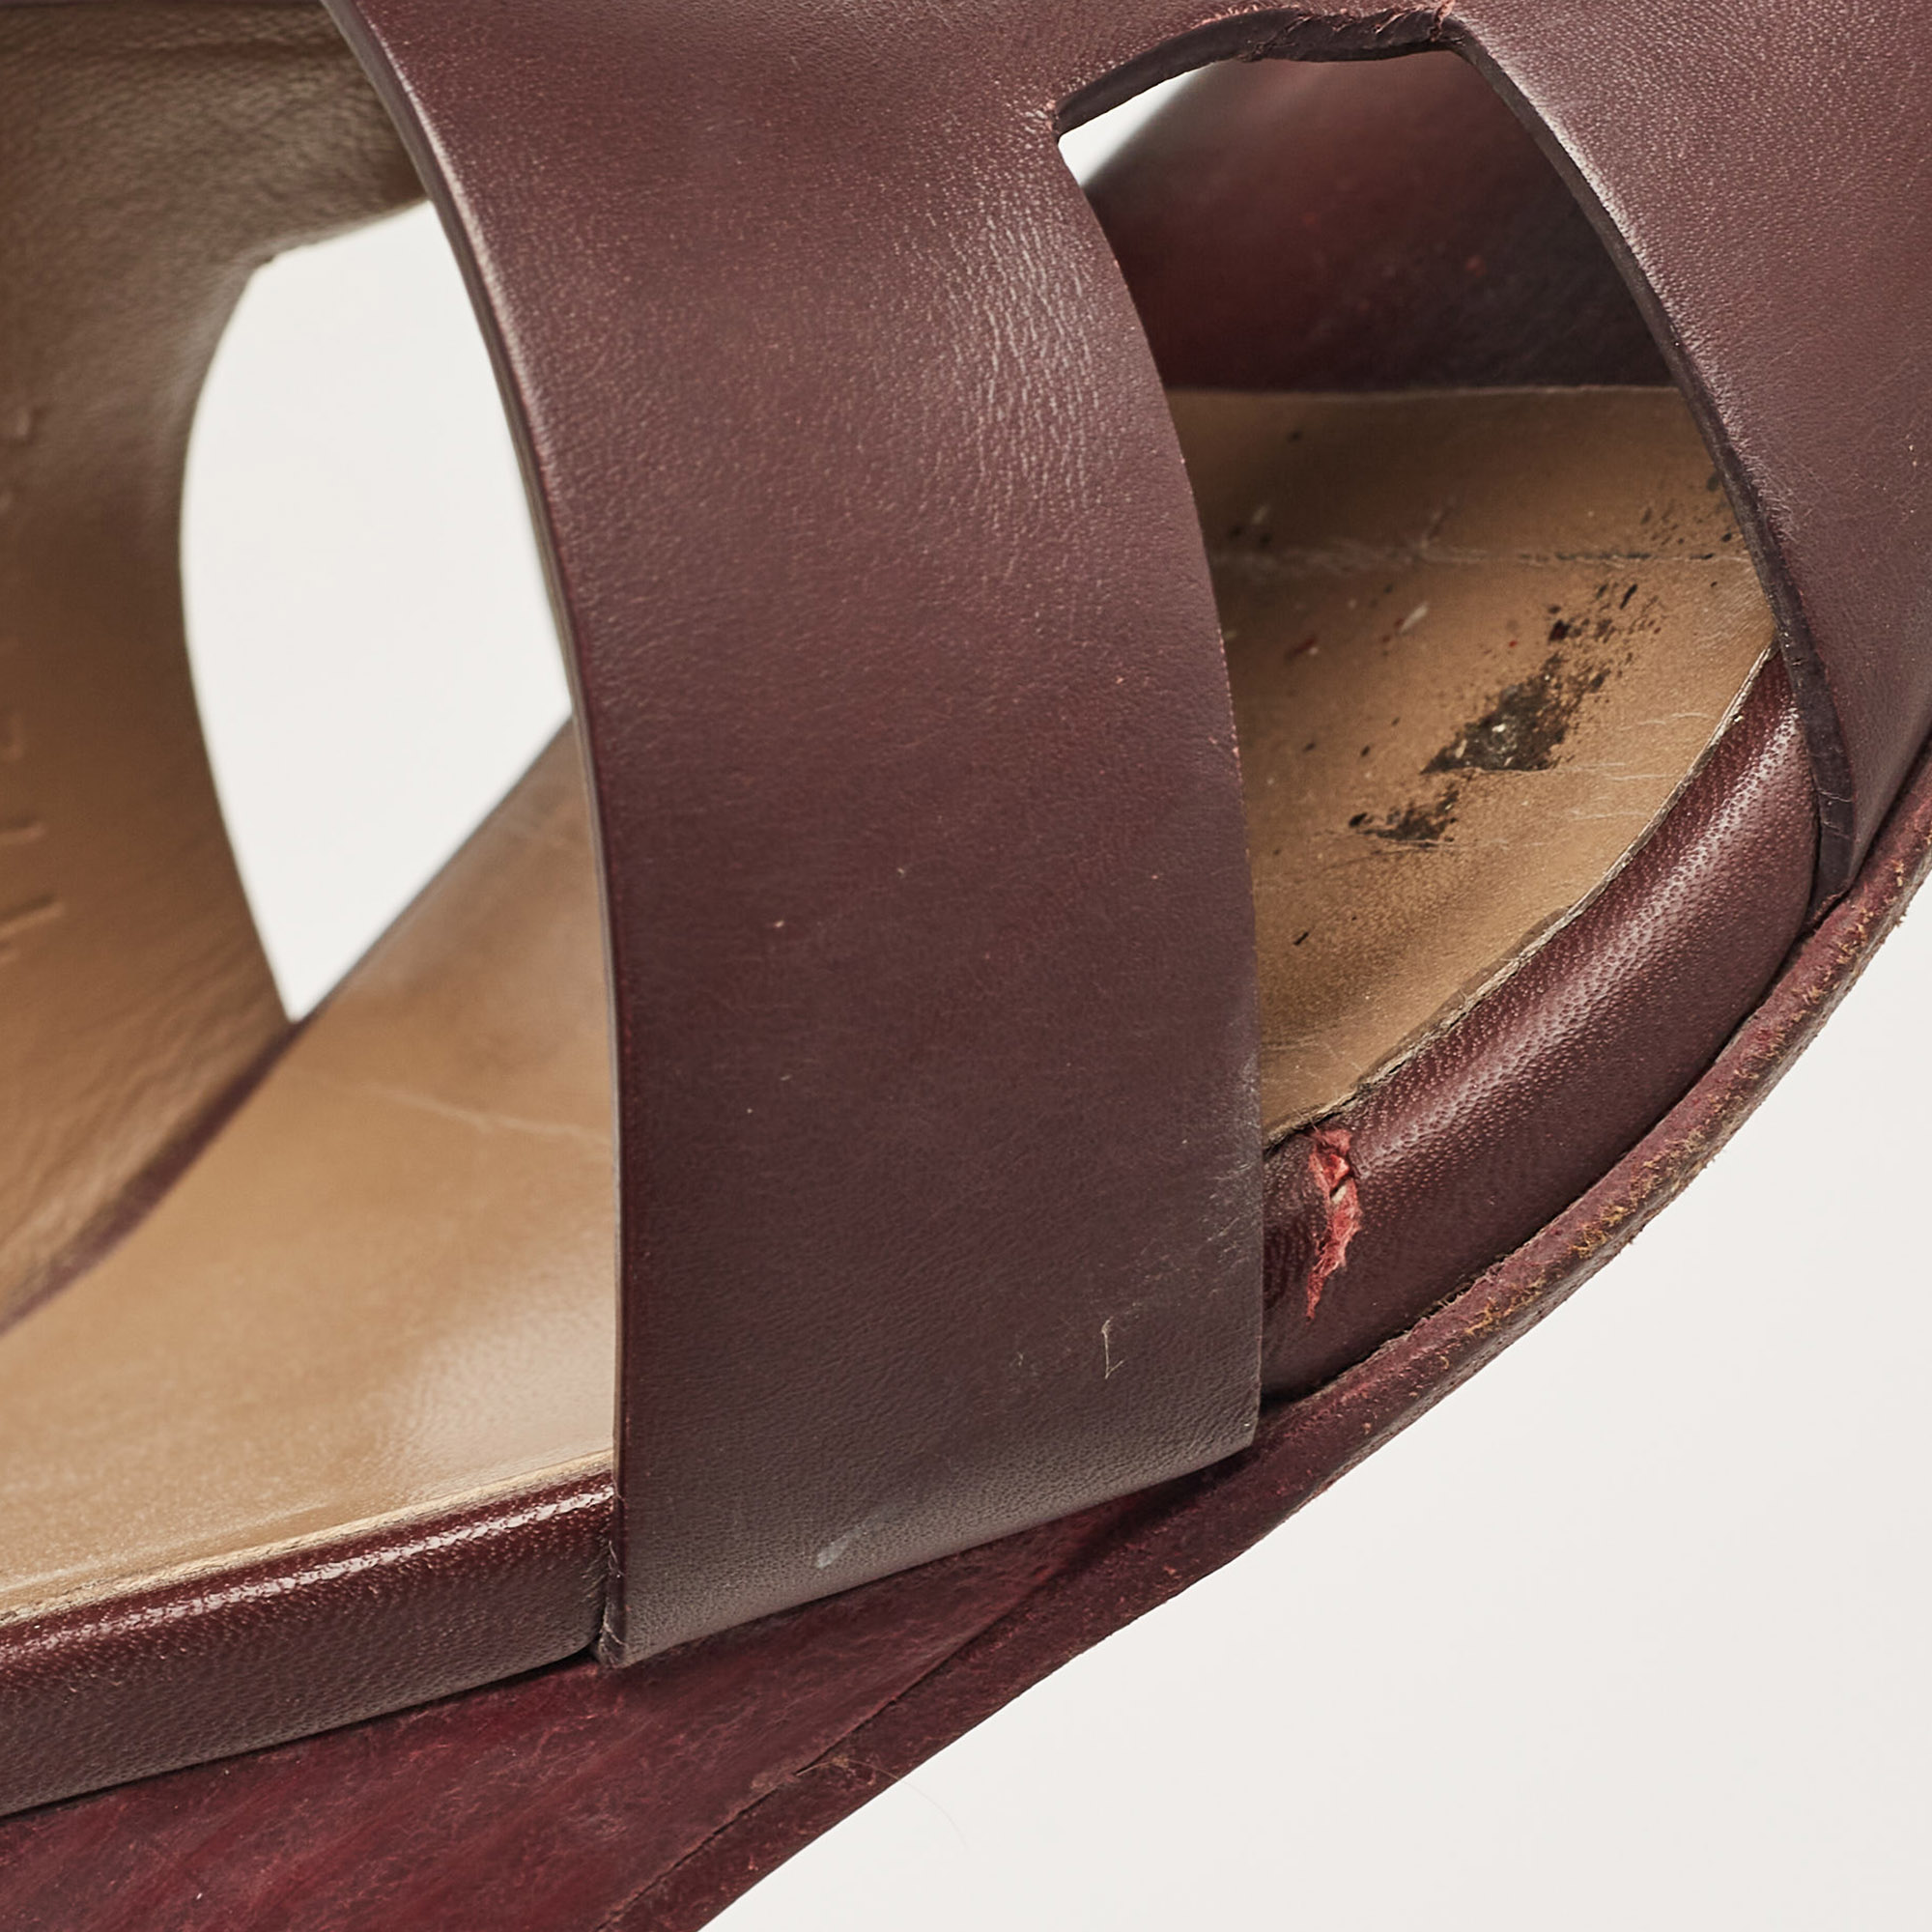 Hermes Burgundy Leather Legend Wedge Sandals Size 37.5